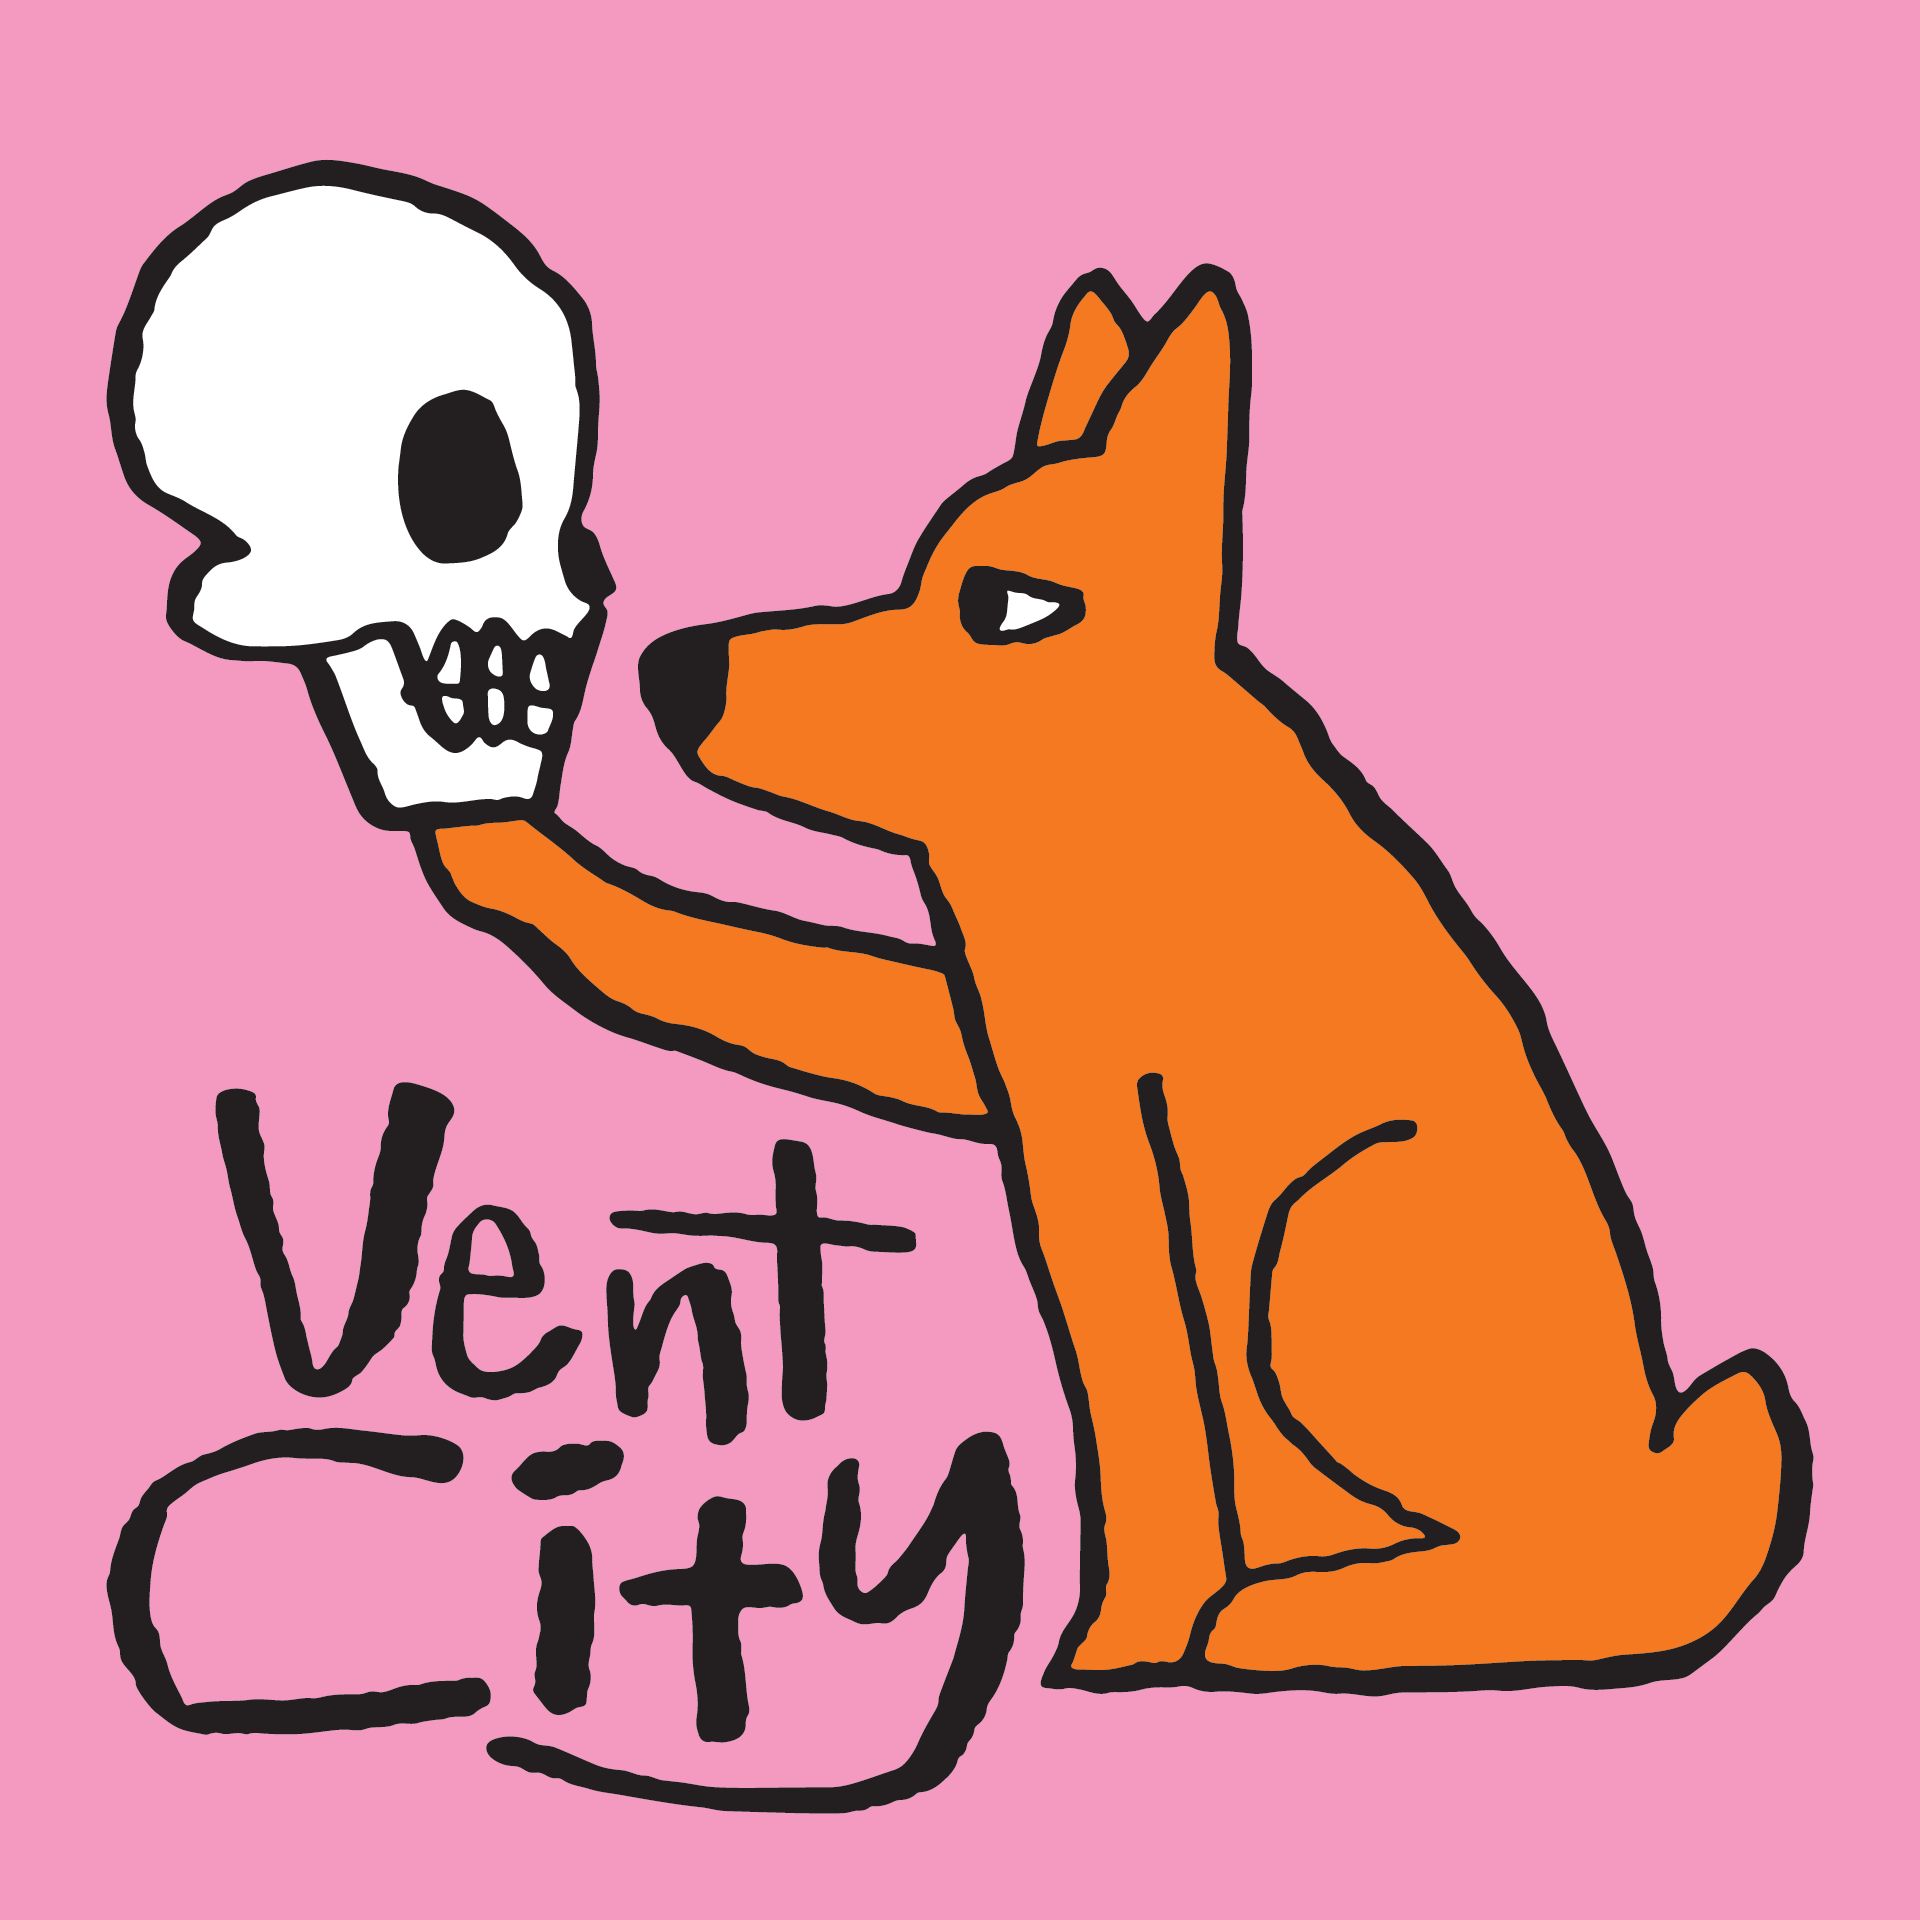 vent city podcast spotify